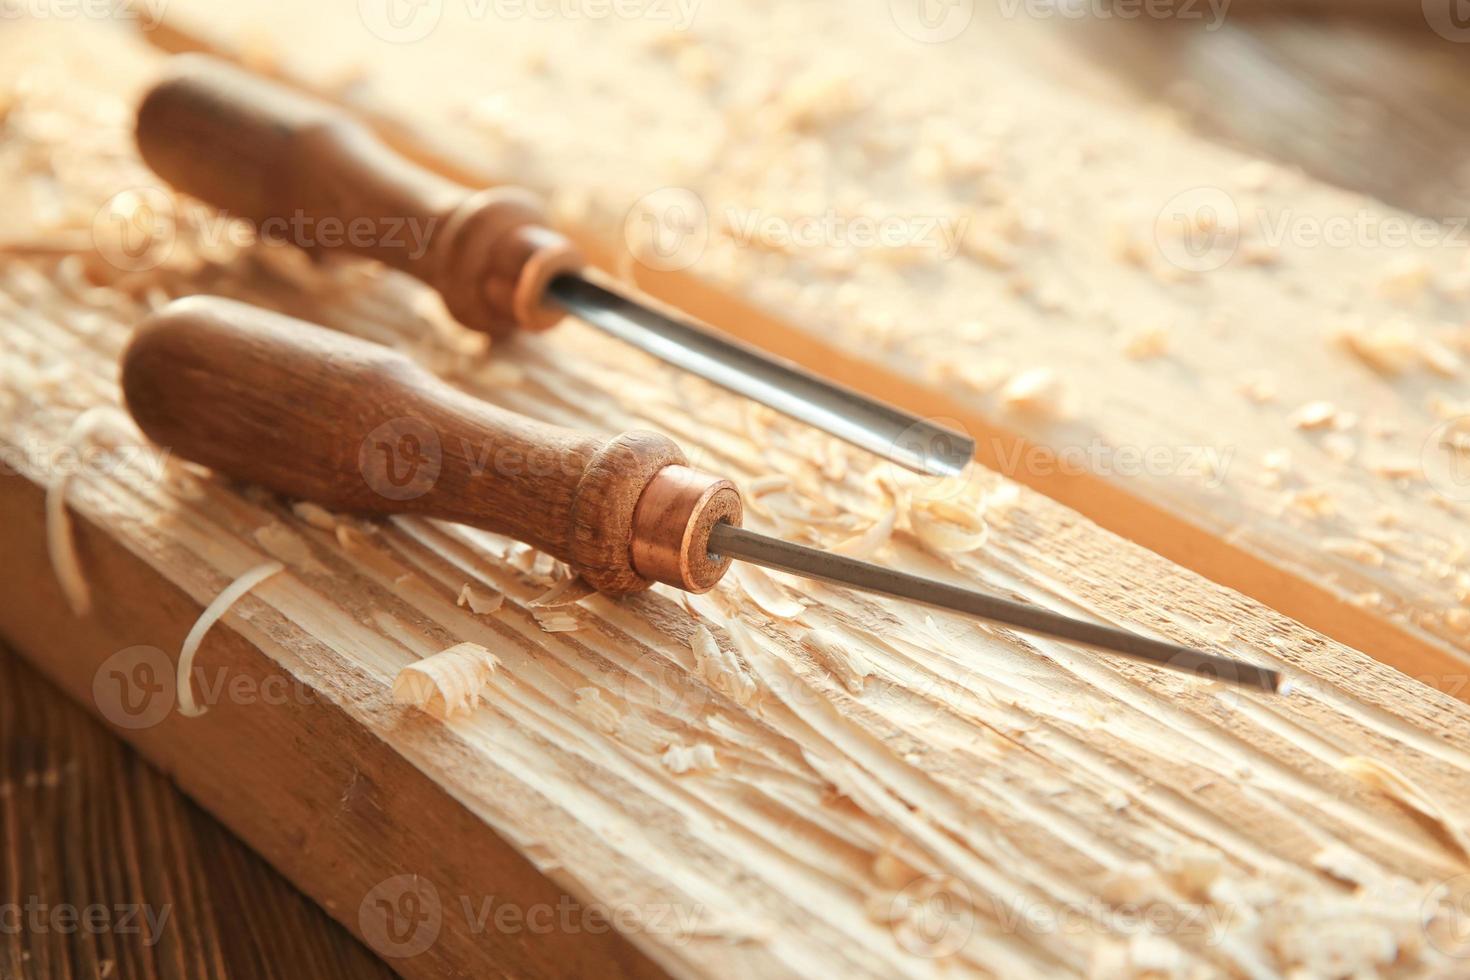 cinceles, tablas de madera y aserrín en el taller de carpintería foto